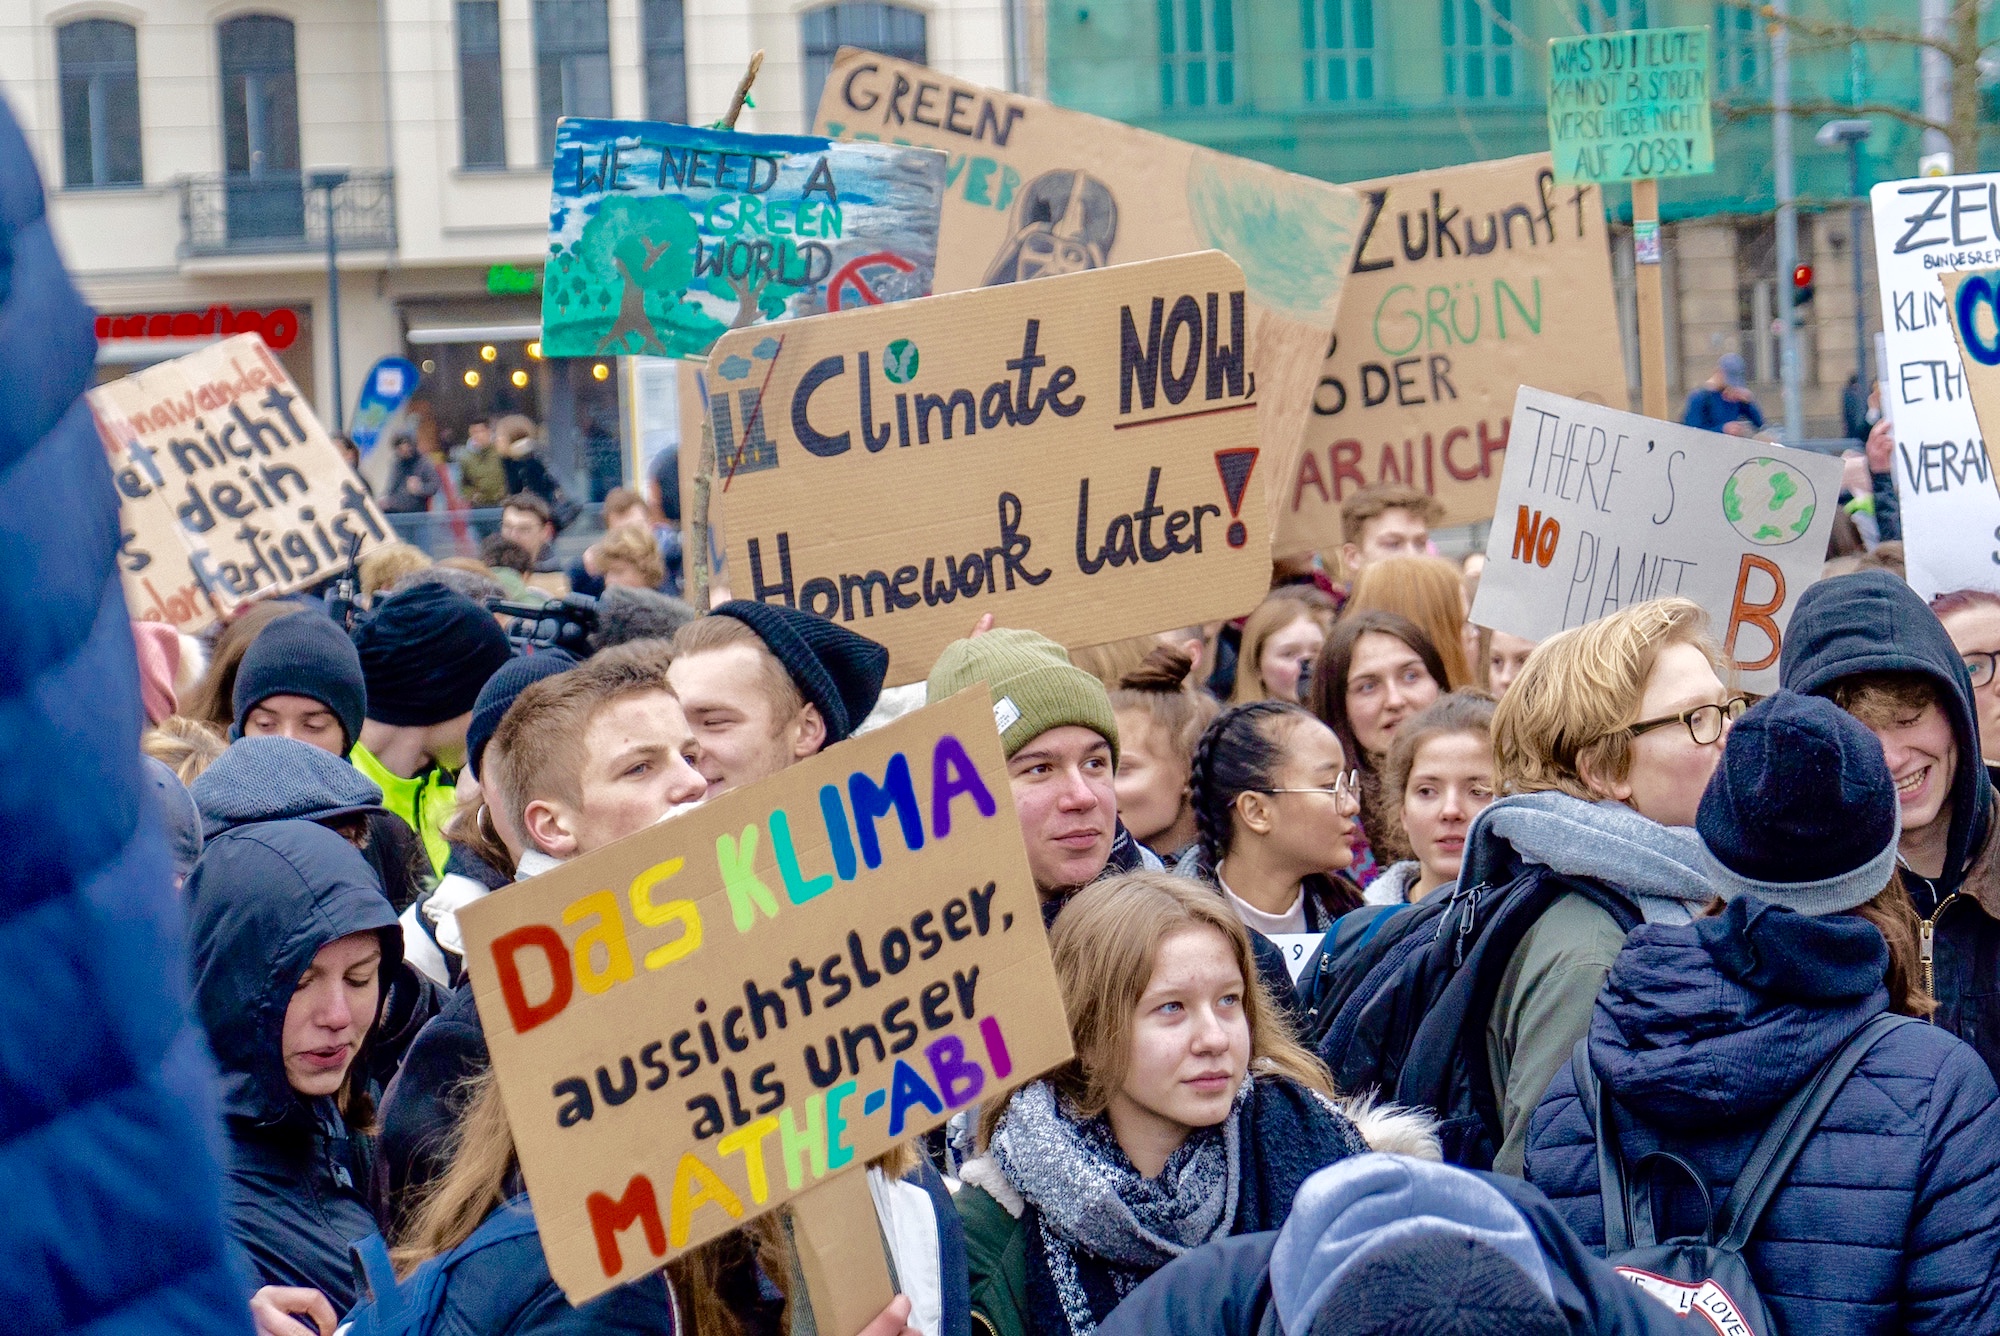 Blijft Europa na de verkiezingen klimaatvoortrekker?